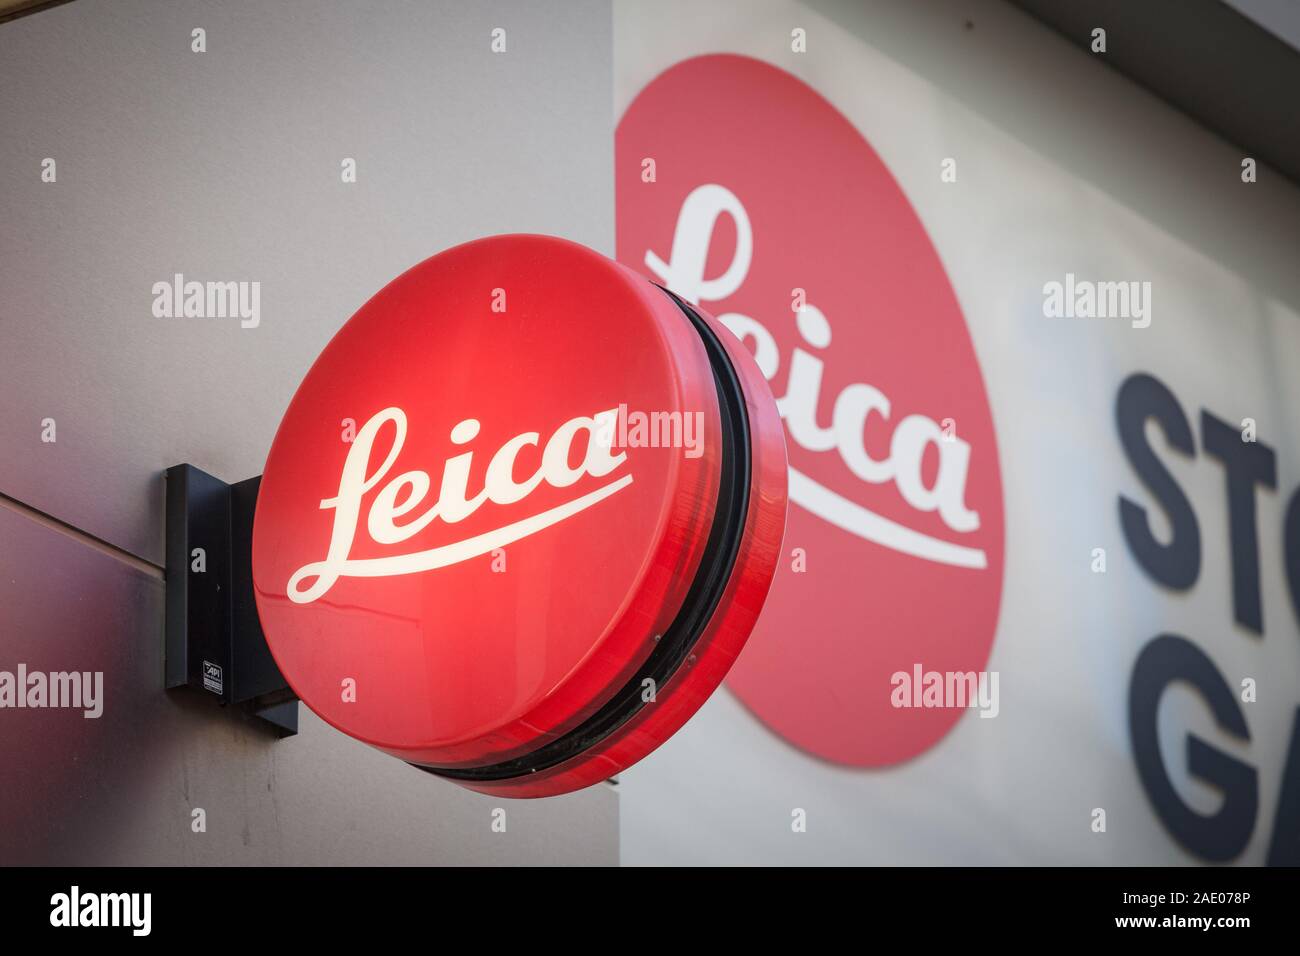 VIENNA, Austria - 6 Novembre 2019: Leica logo nella parte anteriore del loro rivenditore su un negozio di Vienna. Leica è un produttore tedesco di dispositivi ottici e c Foto Stock